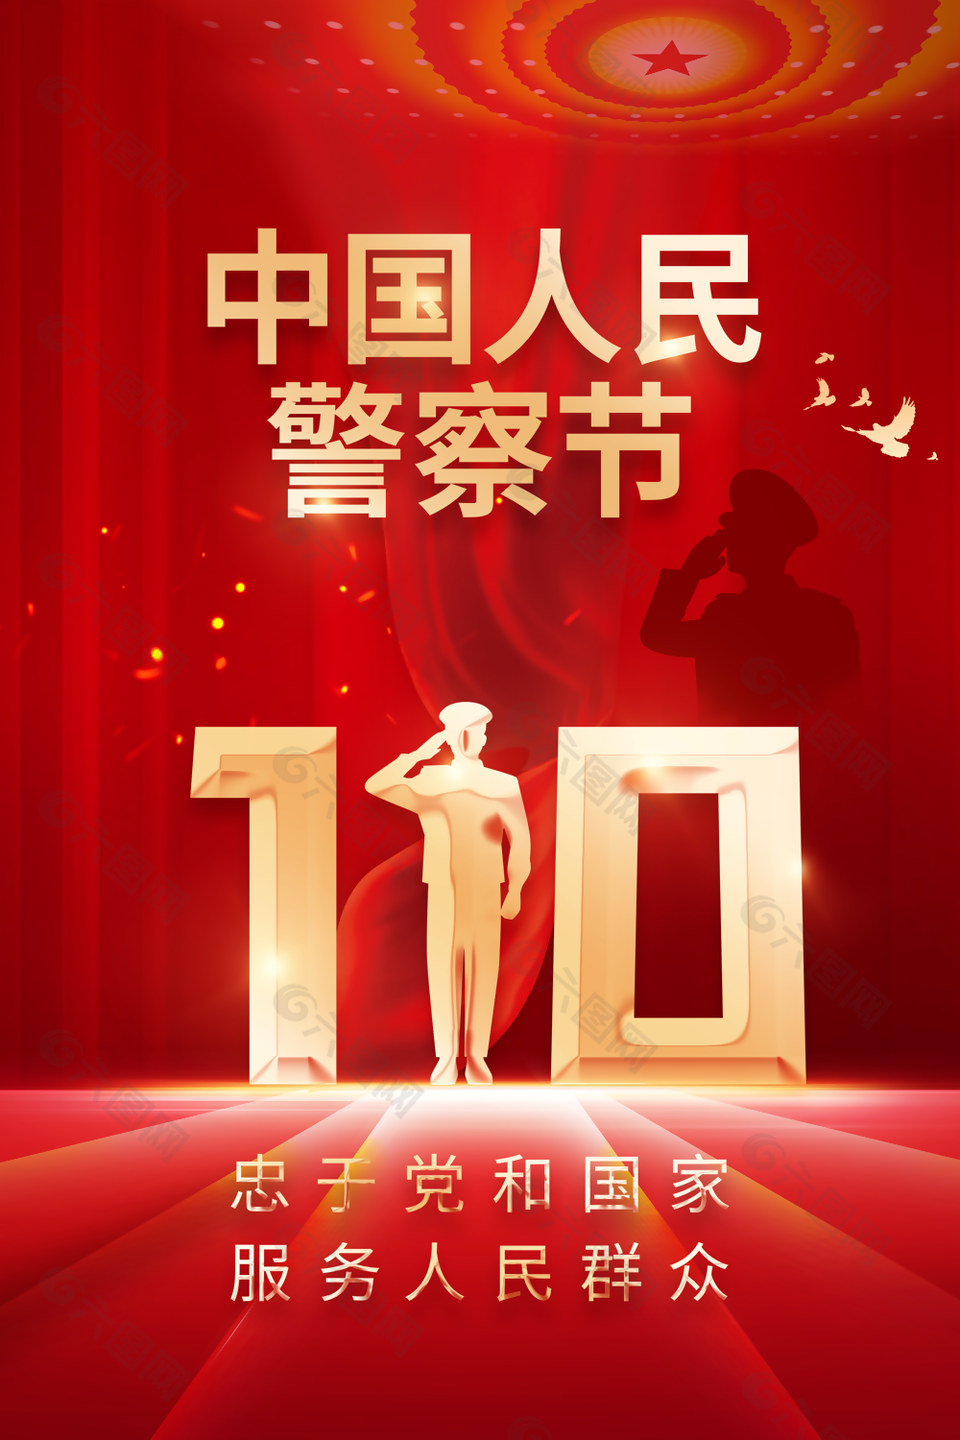 创意大气红色中国人民警察节海报设计